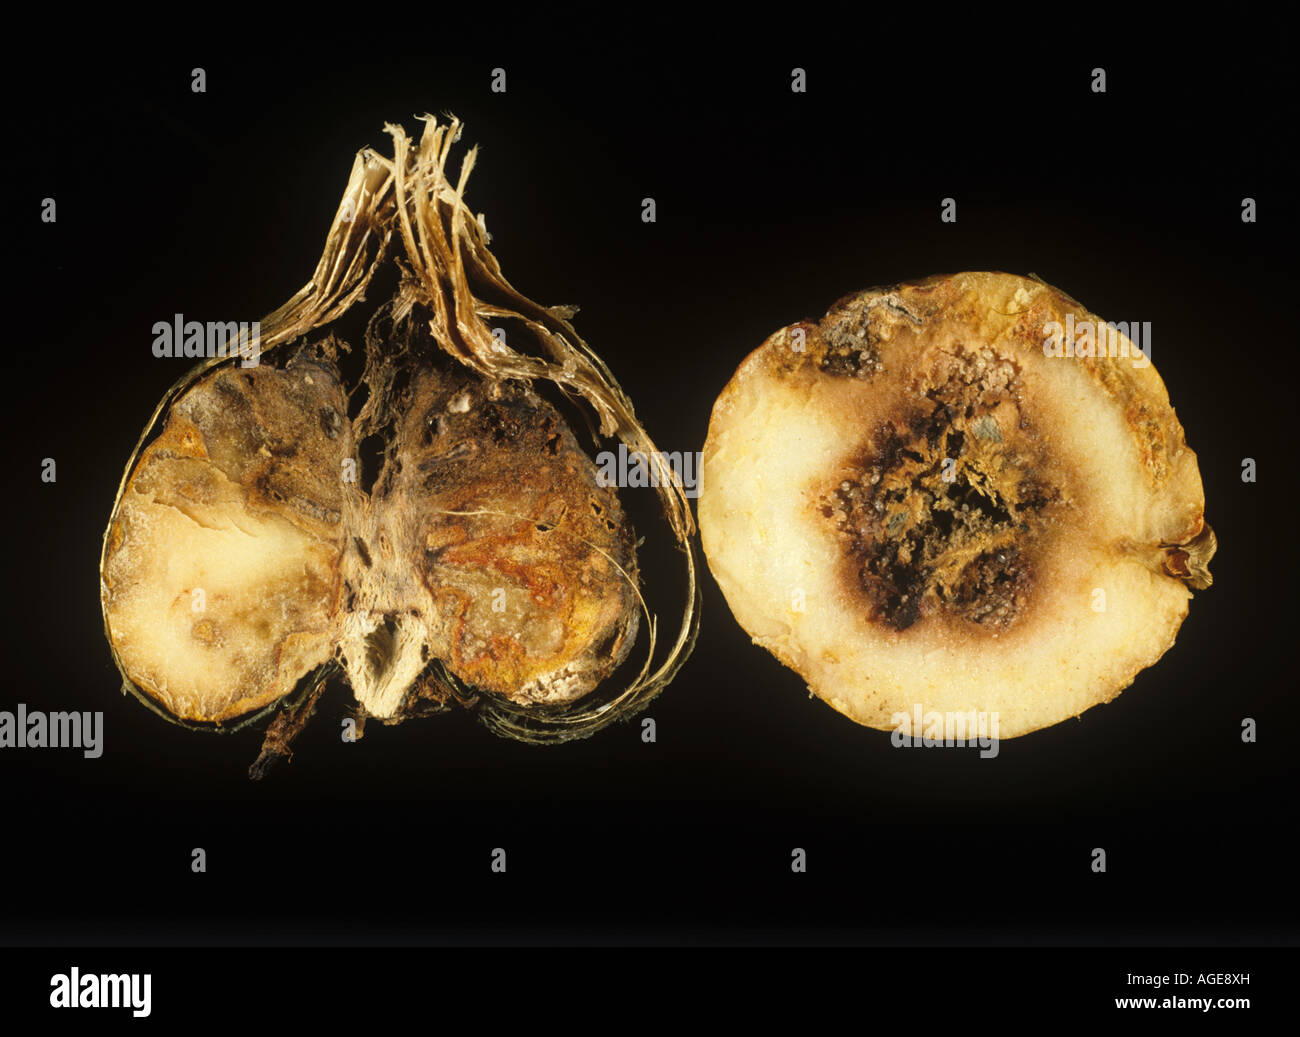 La podredumbre basal Fusarium oxysporum daños internos en la sección de cormos fresia Foto de stock